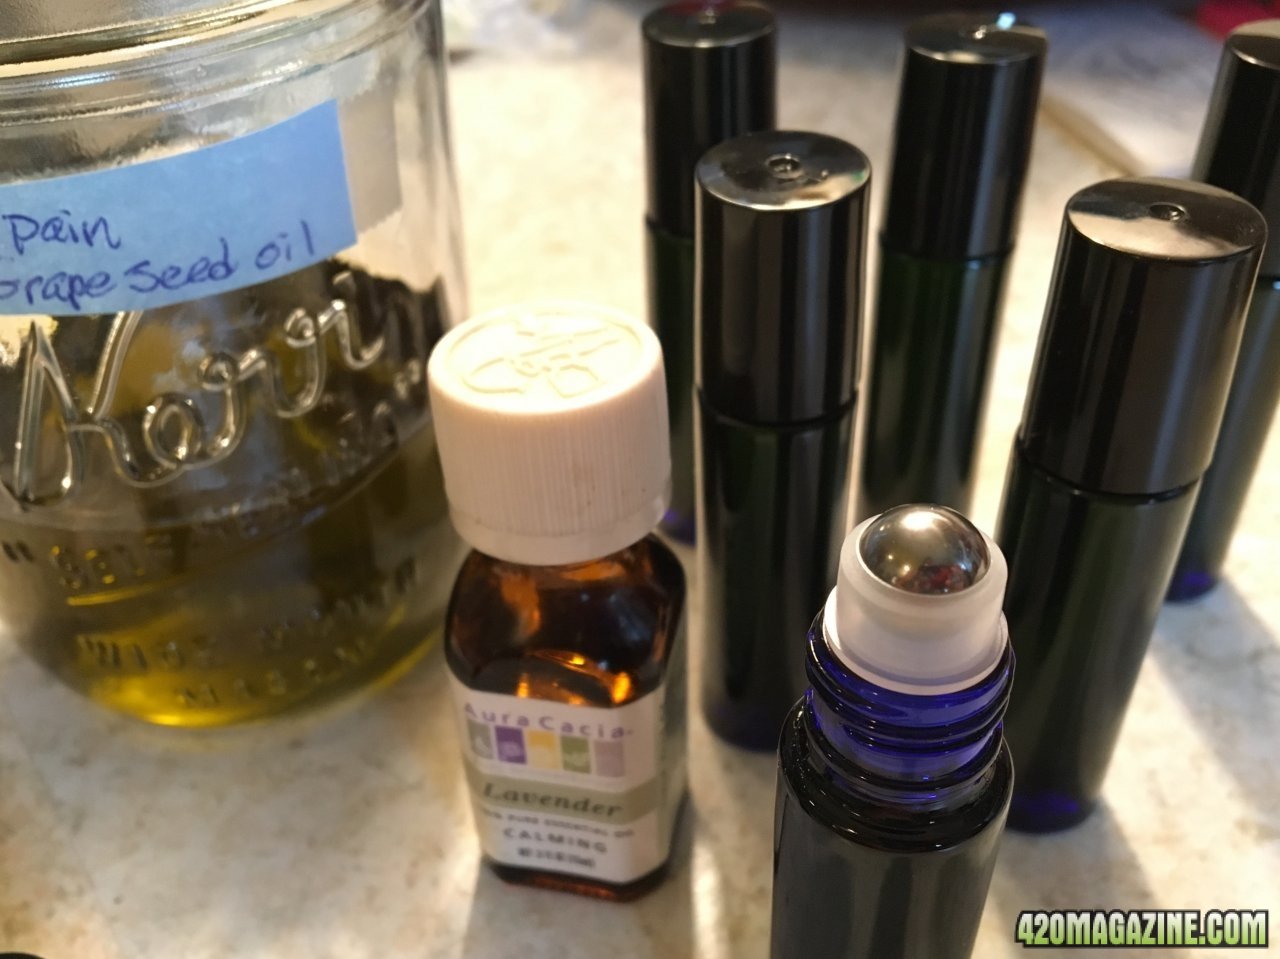 Healing oils